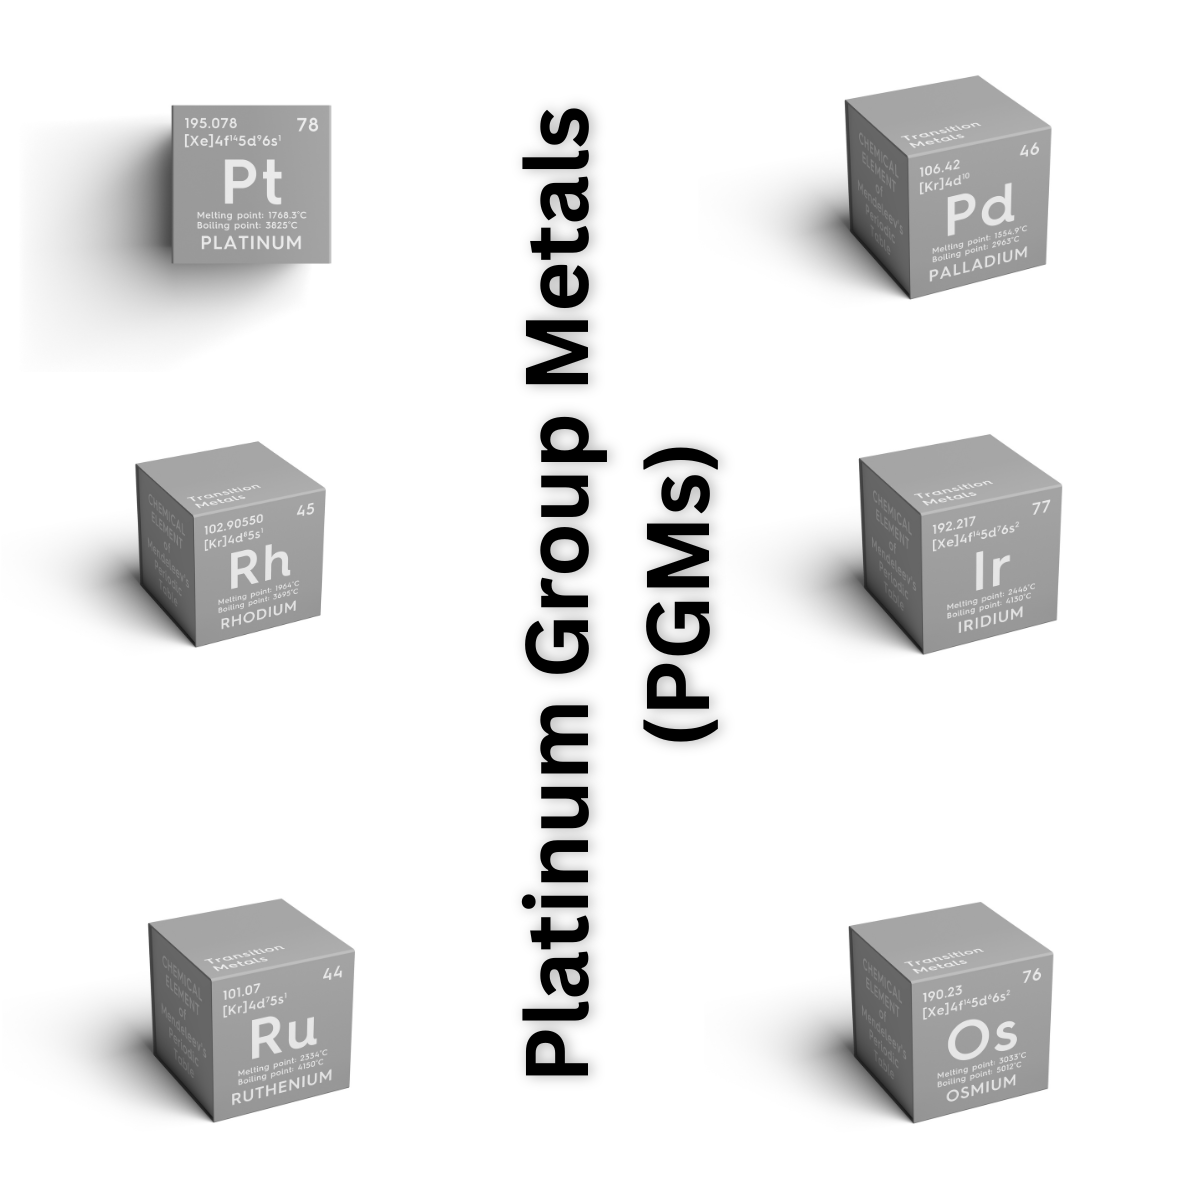 PGM (Platinum Group Metals)